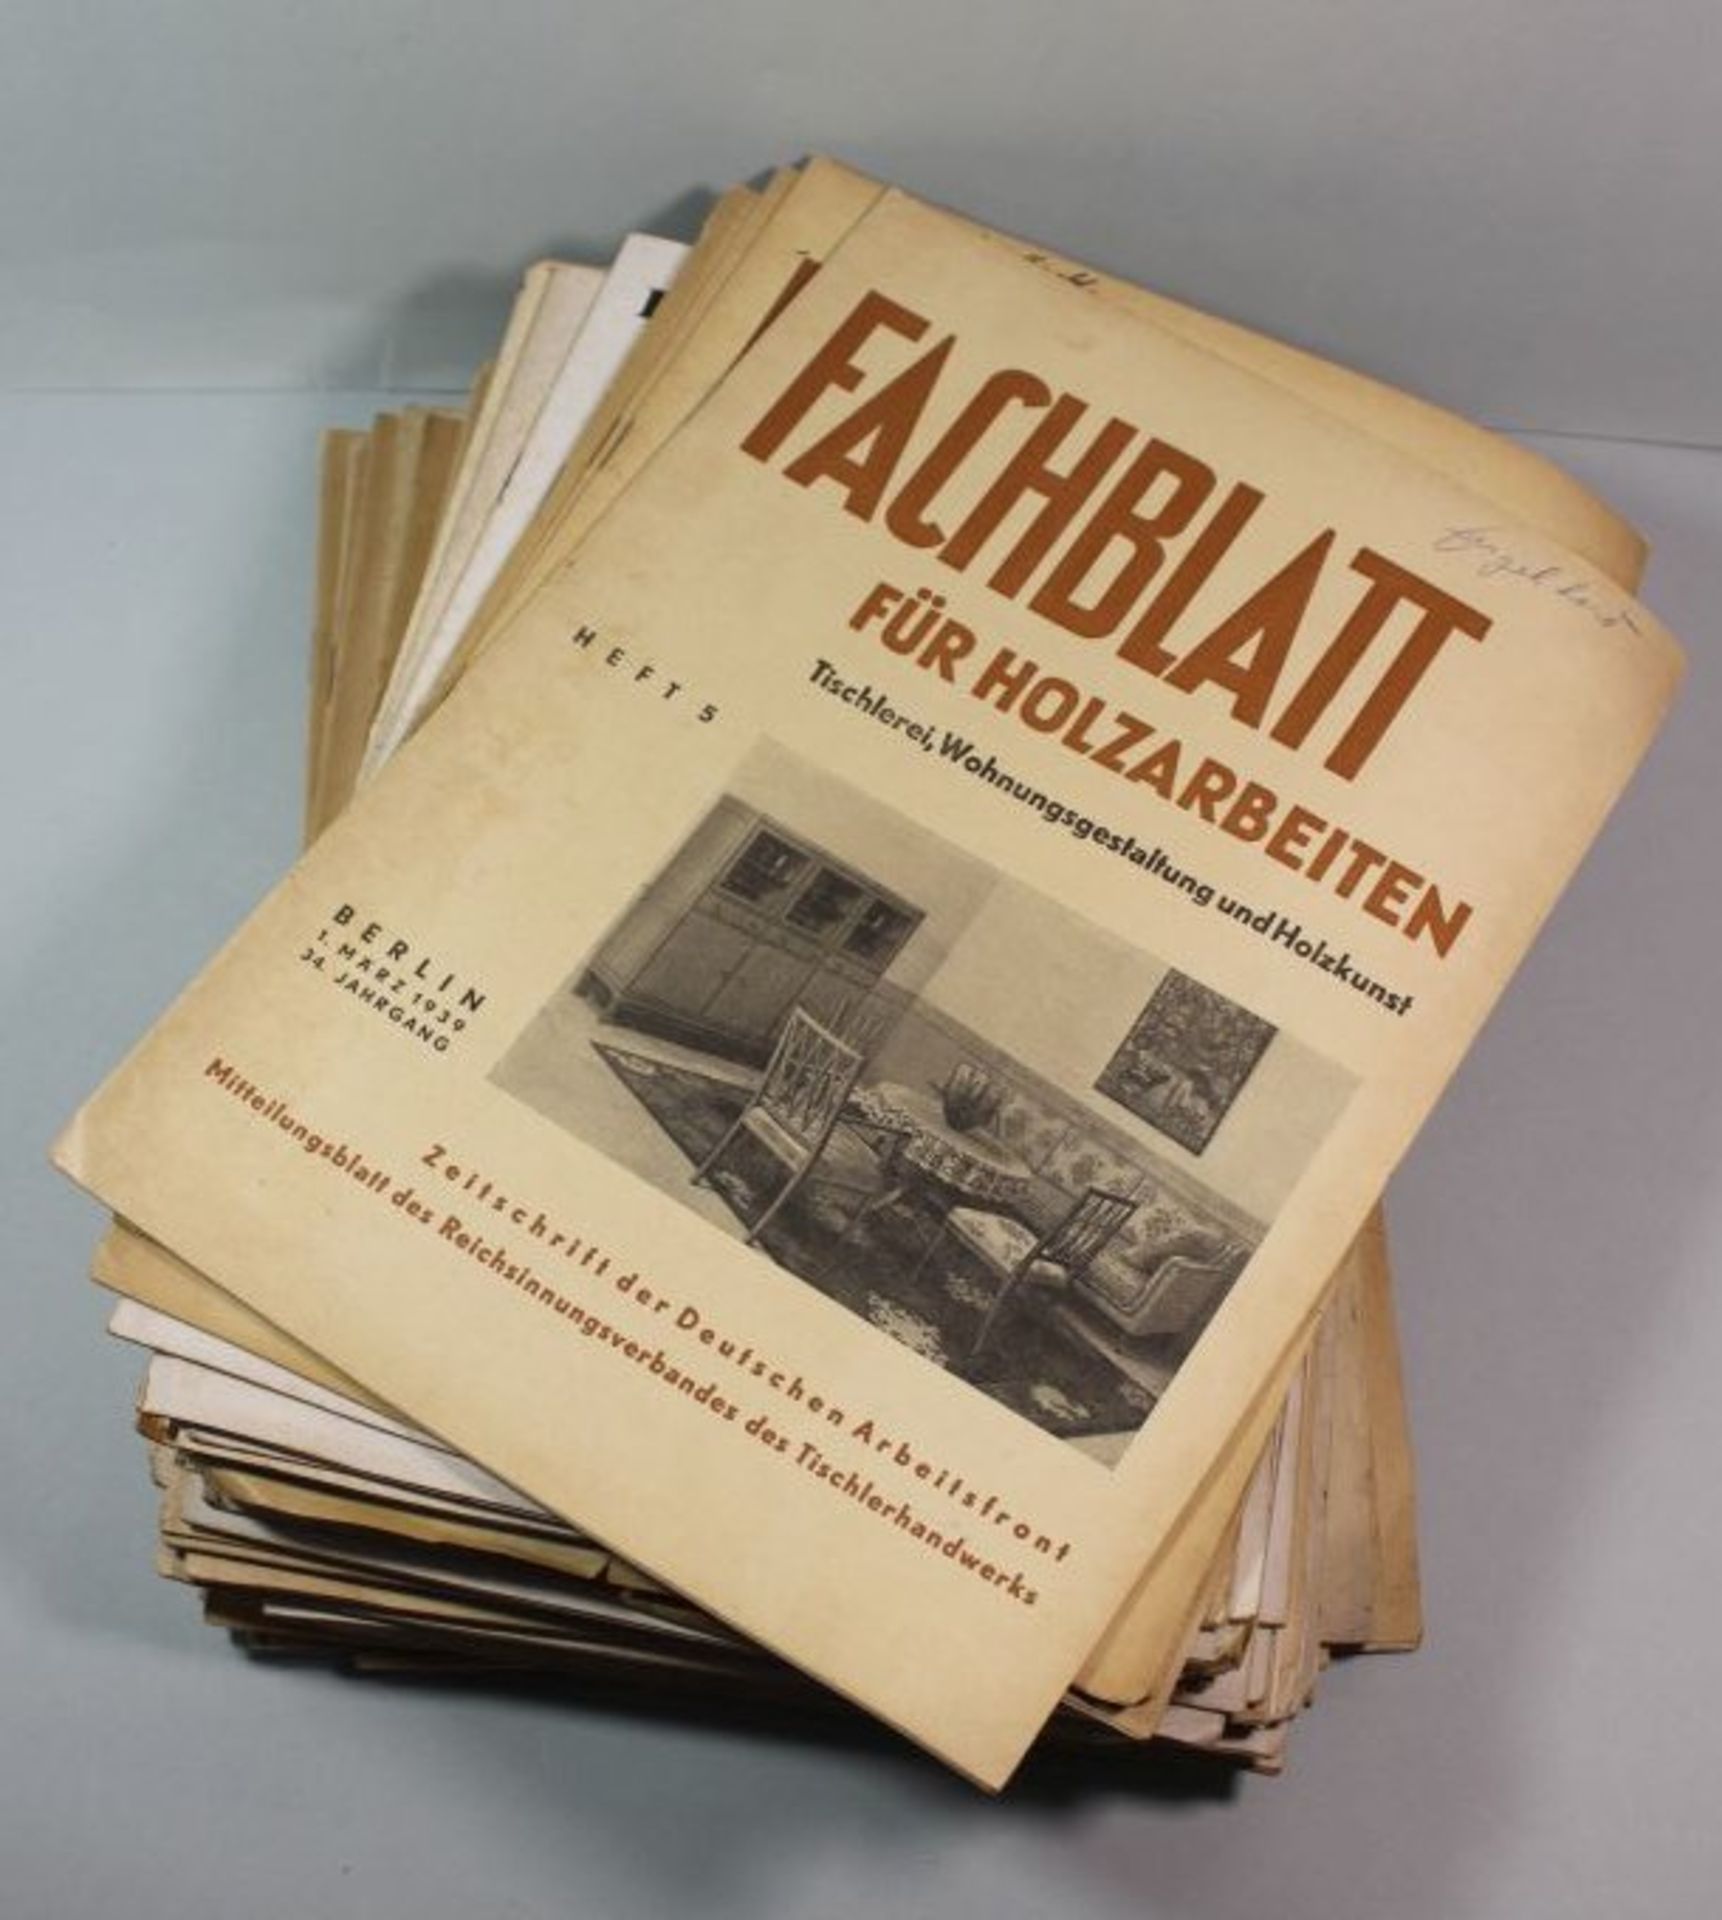 55 Ausgaben der Zeitschrift "Fachblatt für Holzarbeiten", Zeitschrift der Deutschen Arbeiterfront.